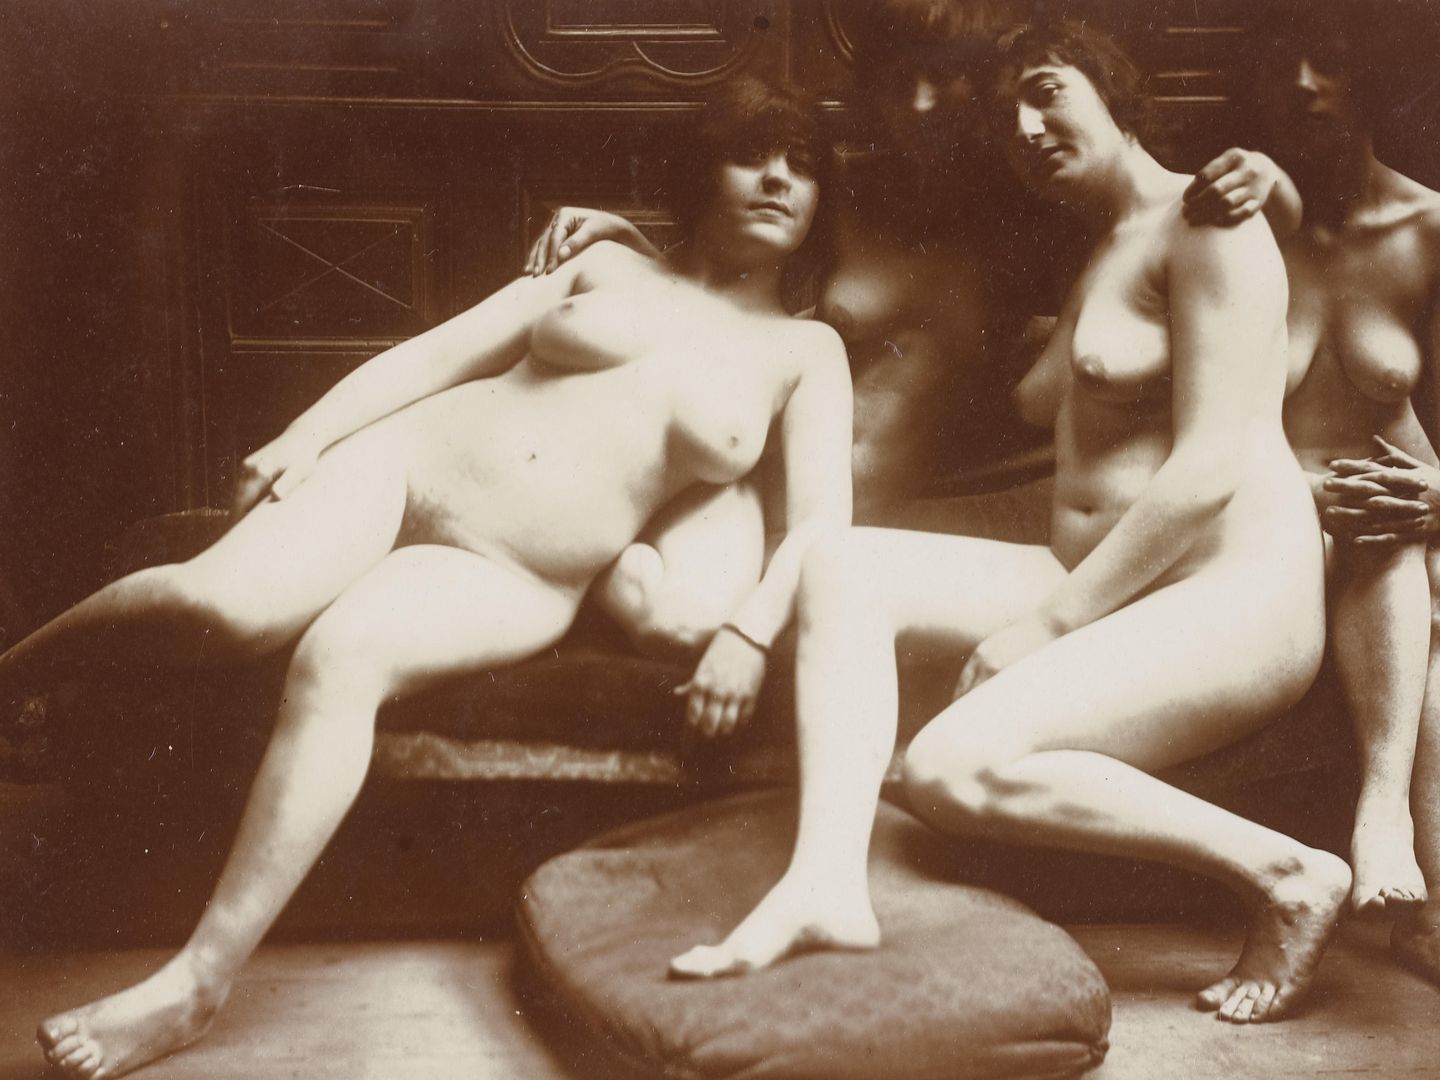 'Groupe de quatre femmes nues', obra expuesta en el Museo D'Orsay